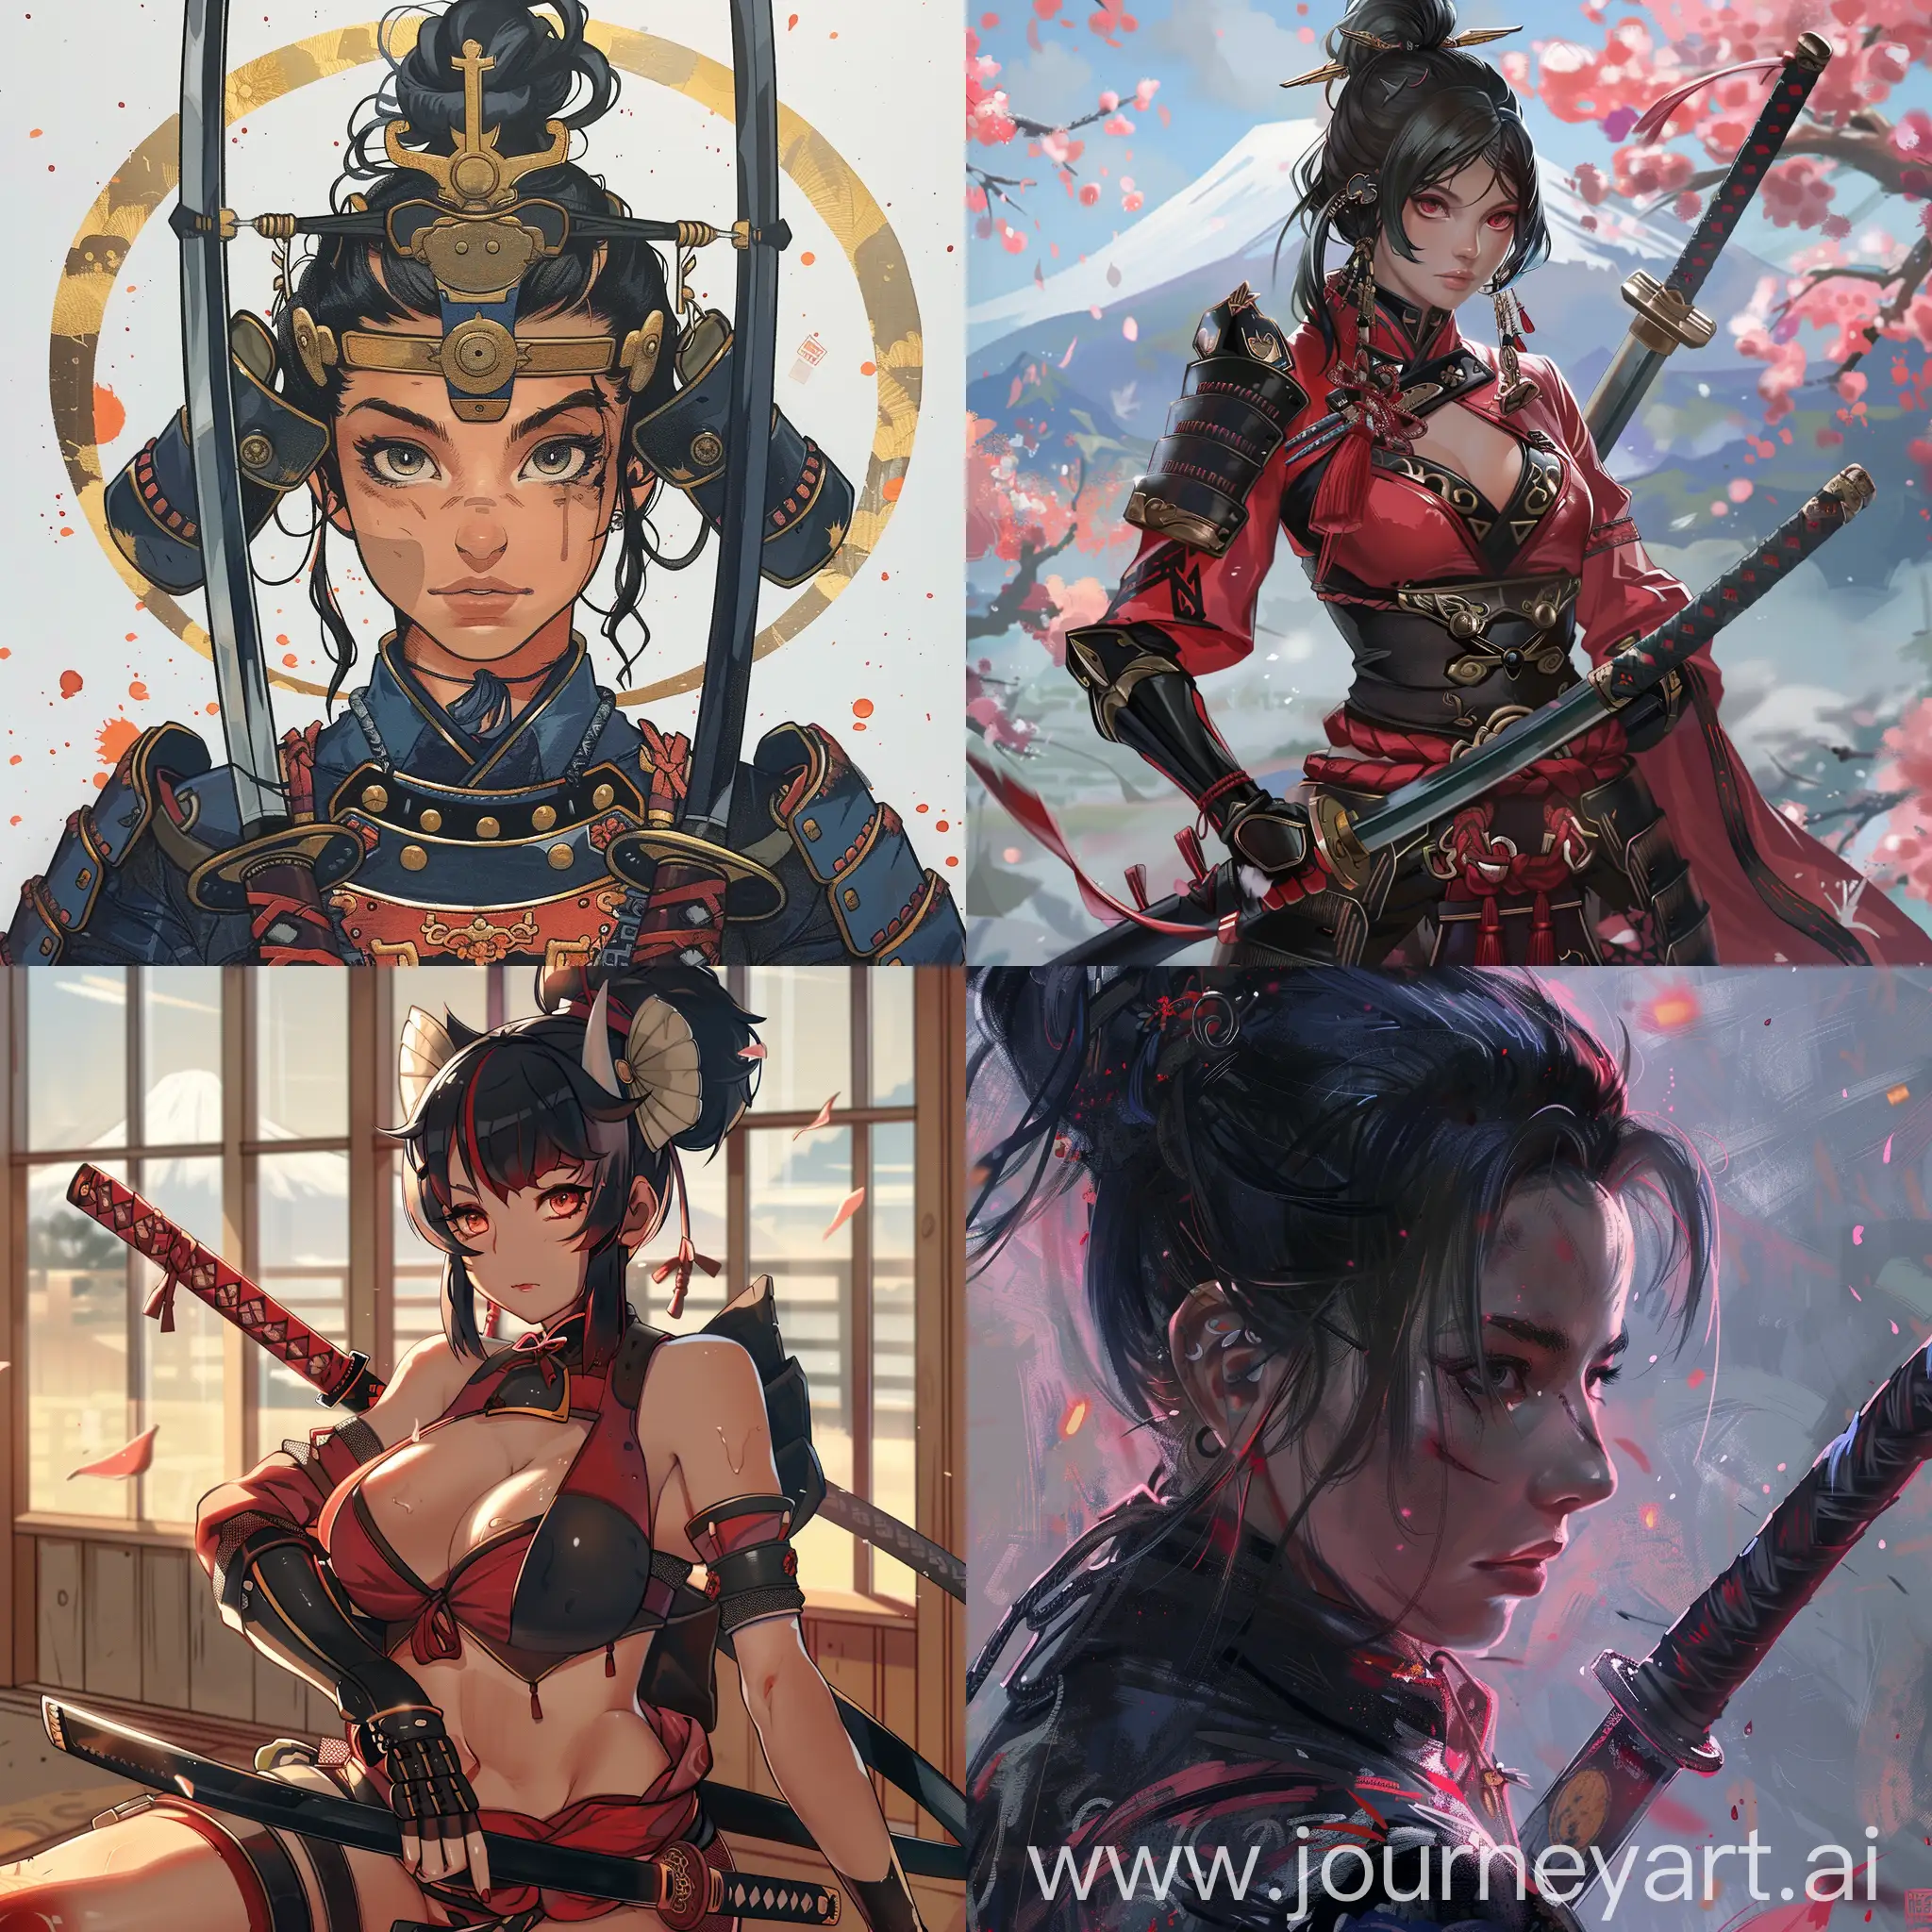 Epic-Samurai-Girl-Nova-in-Vibrant-Colors